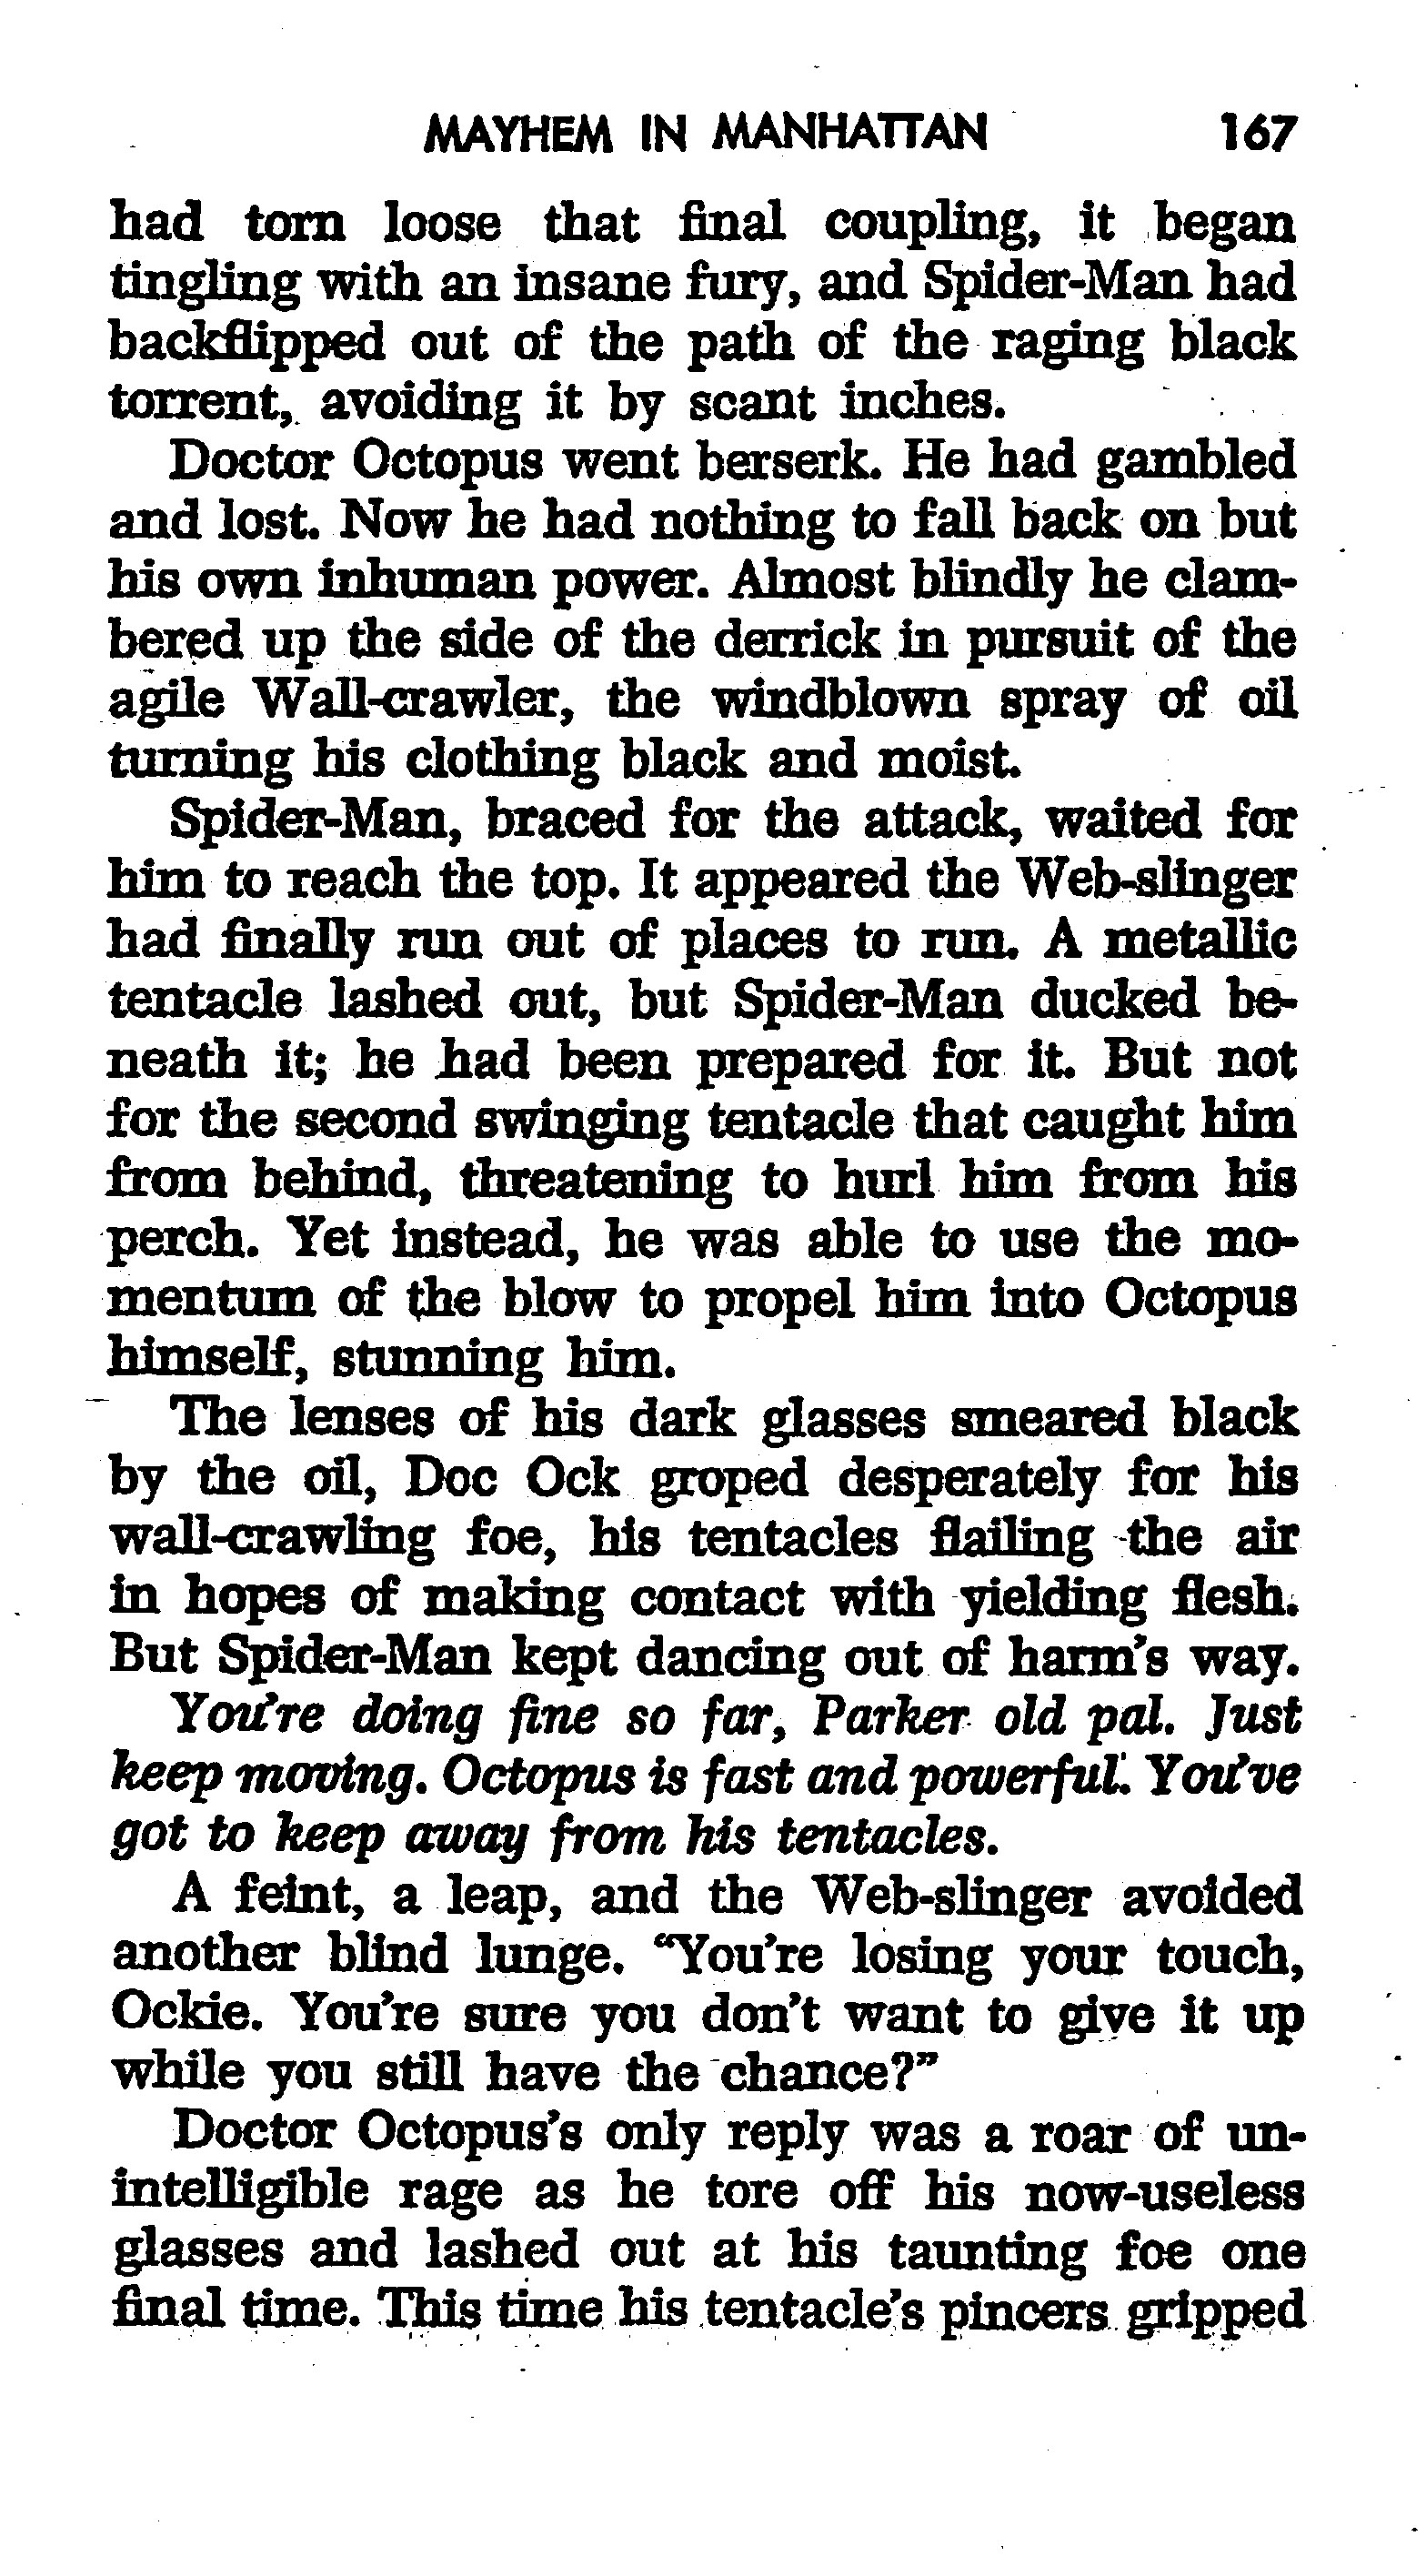 Read online The Amazing Spider-Man: Mayhem in Manhattan comic -  Issue # TPB (Part 2) - 69